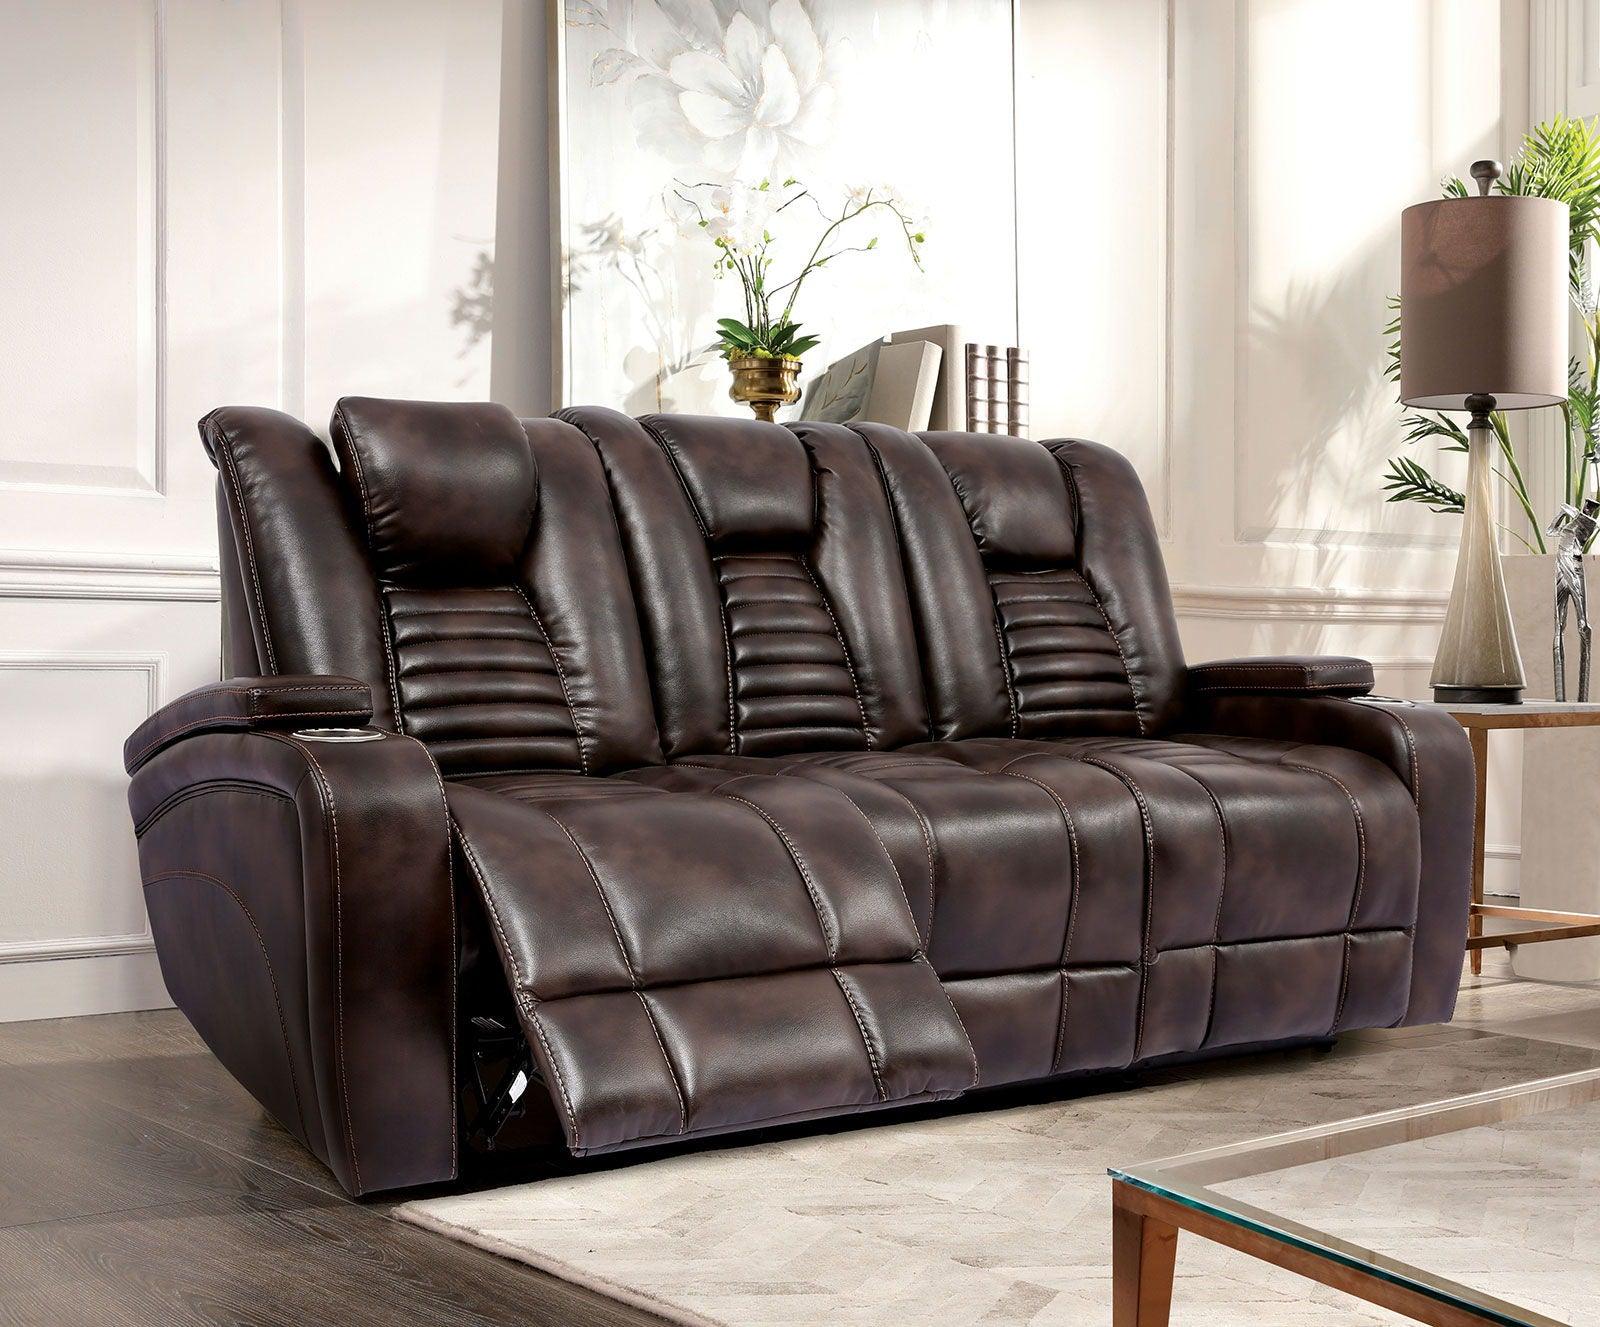 Furniture of America - Abrielle - Dual Power Sofa - Dark Brown - 5th Avenue Furniture